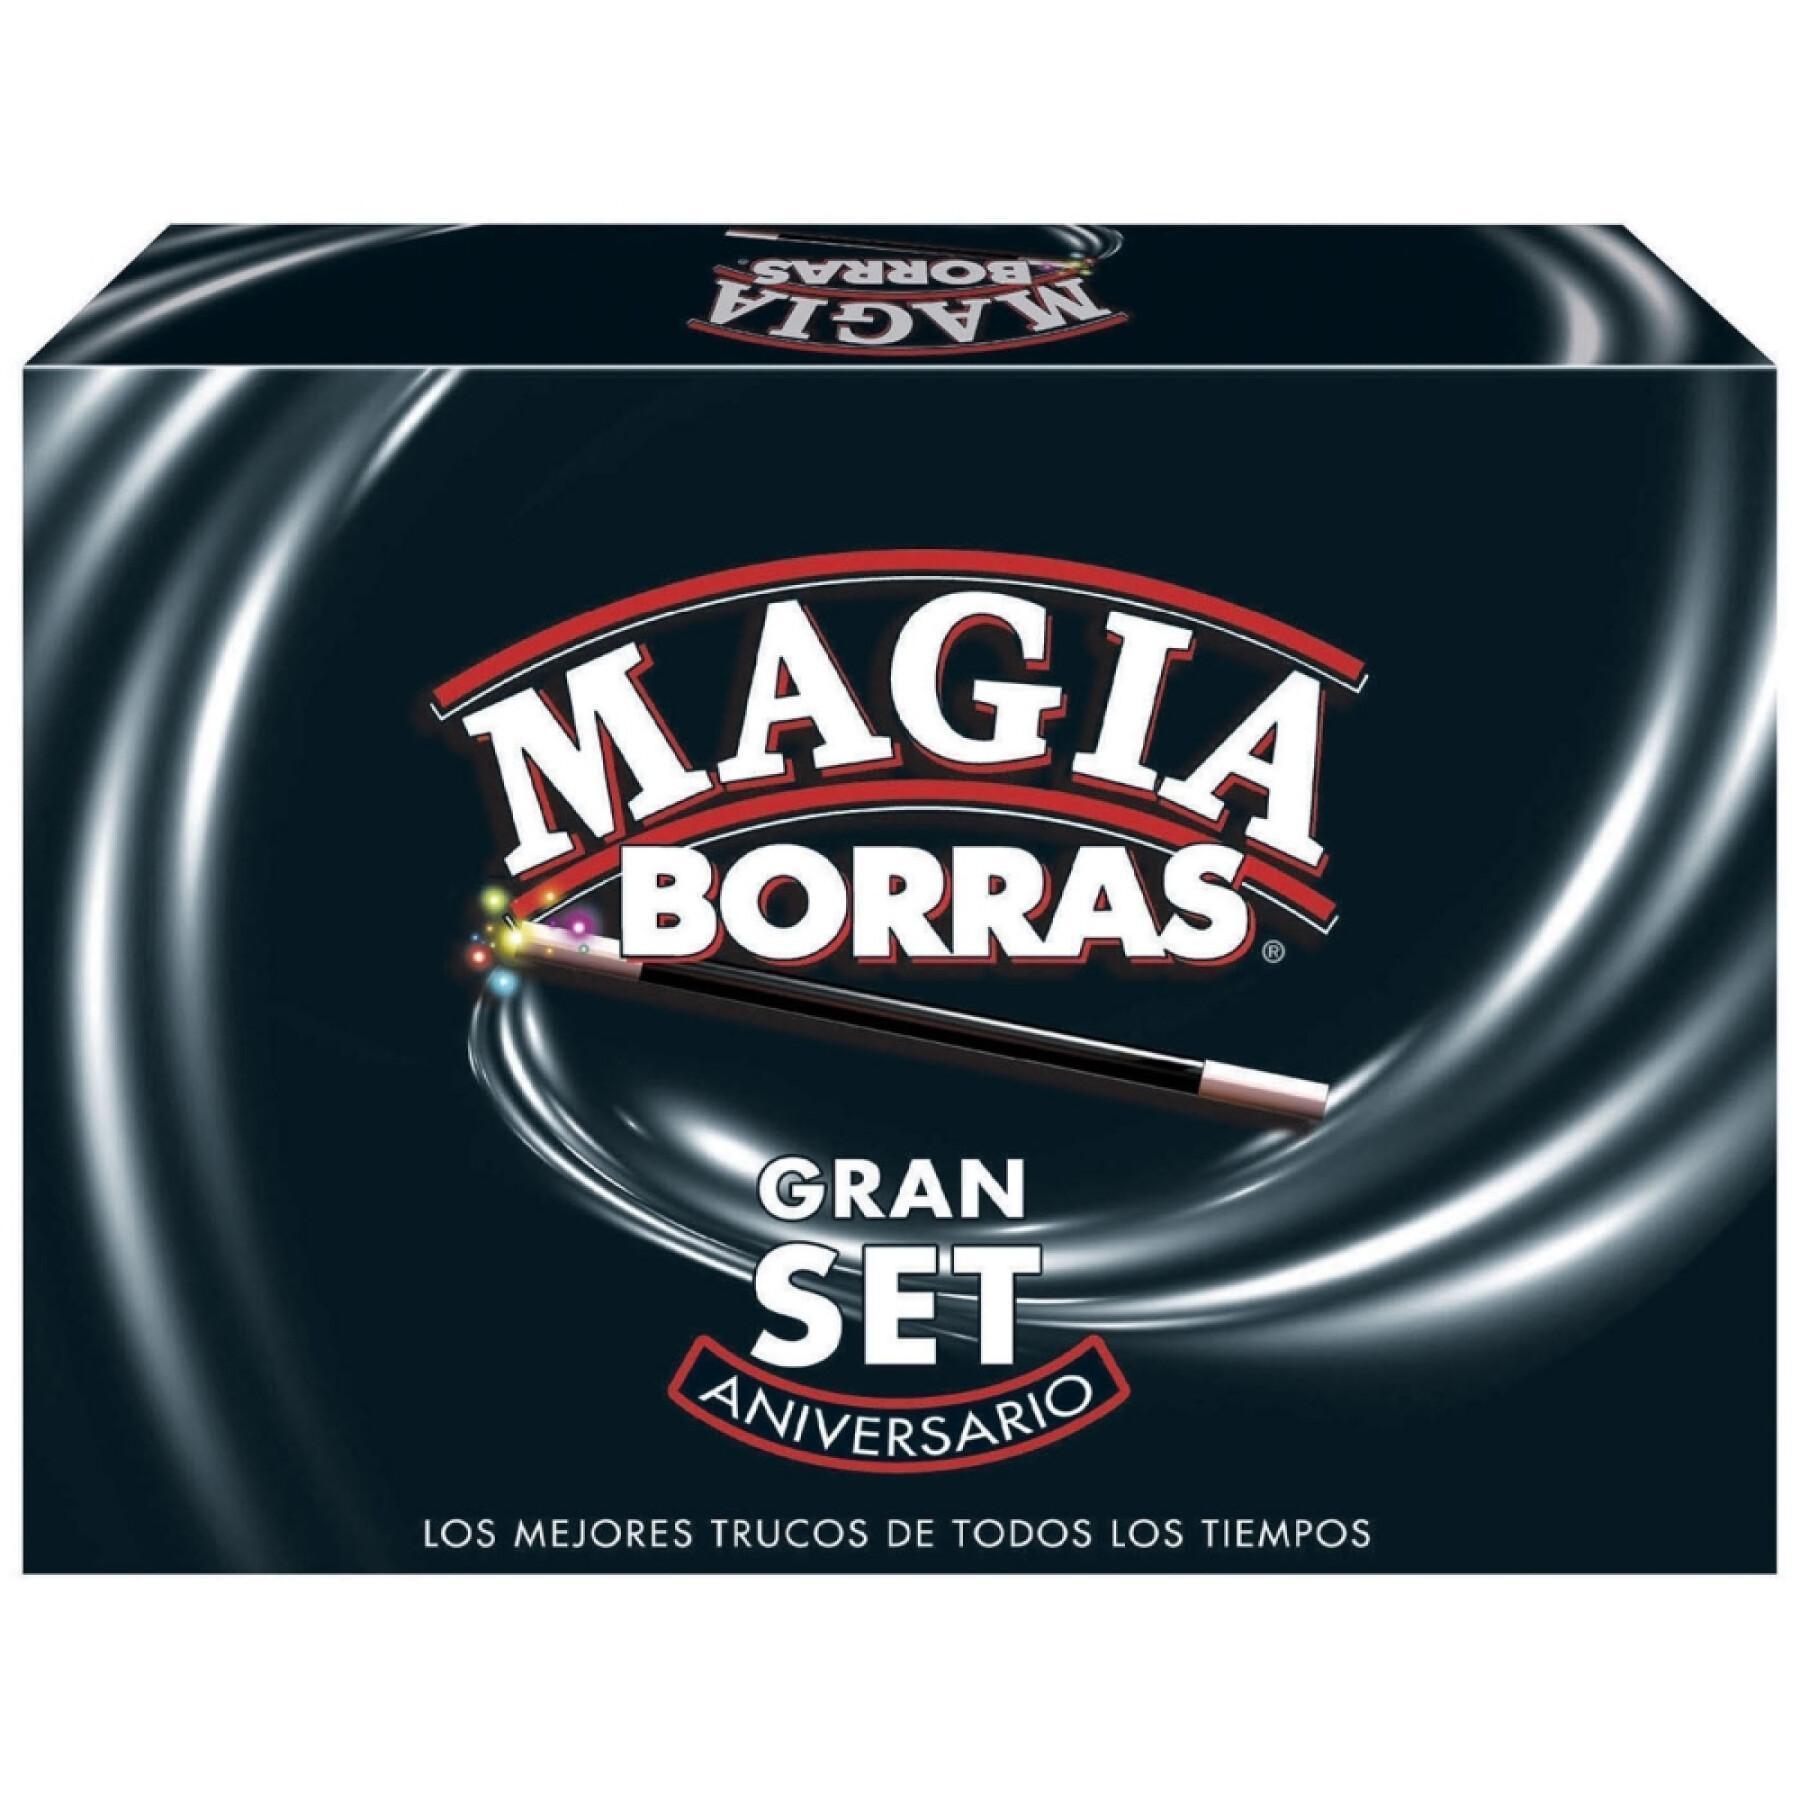 Gran kit de trucos de magia 125 cumpleaños Borrás